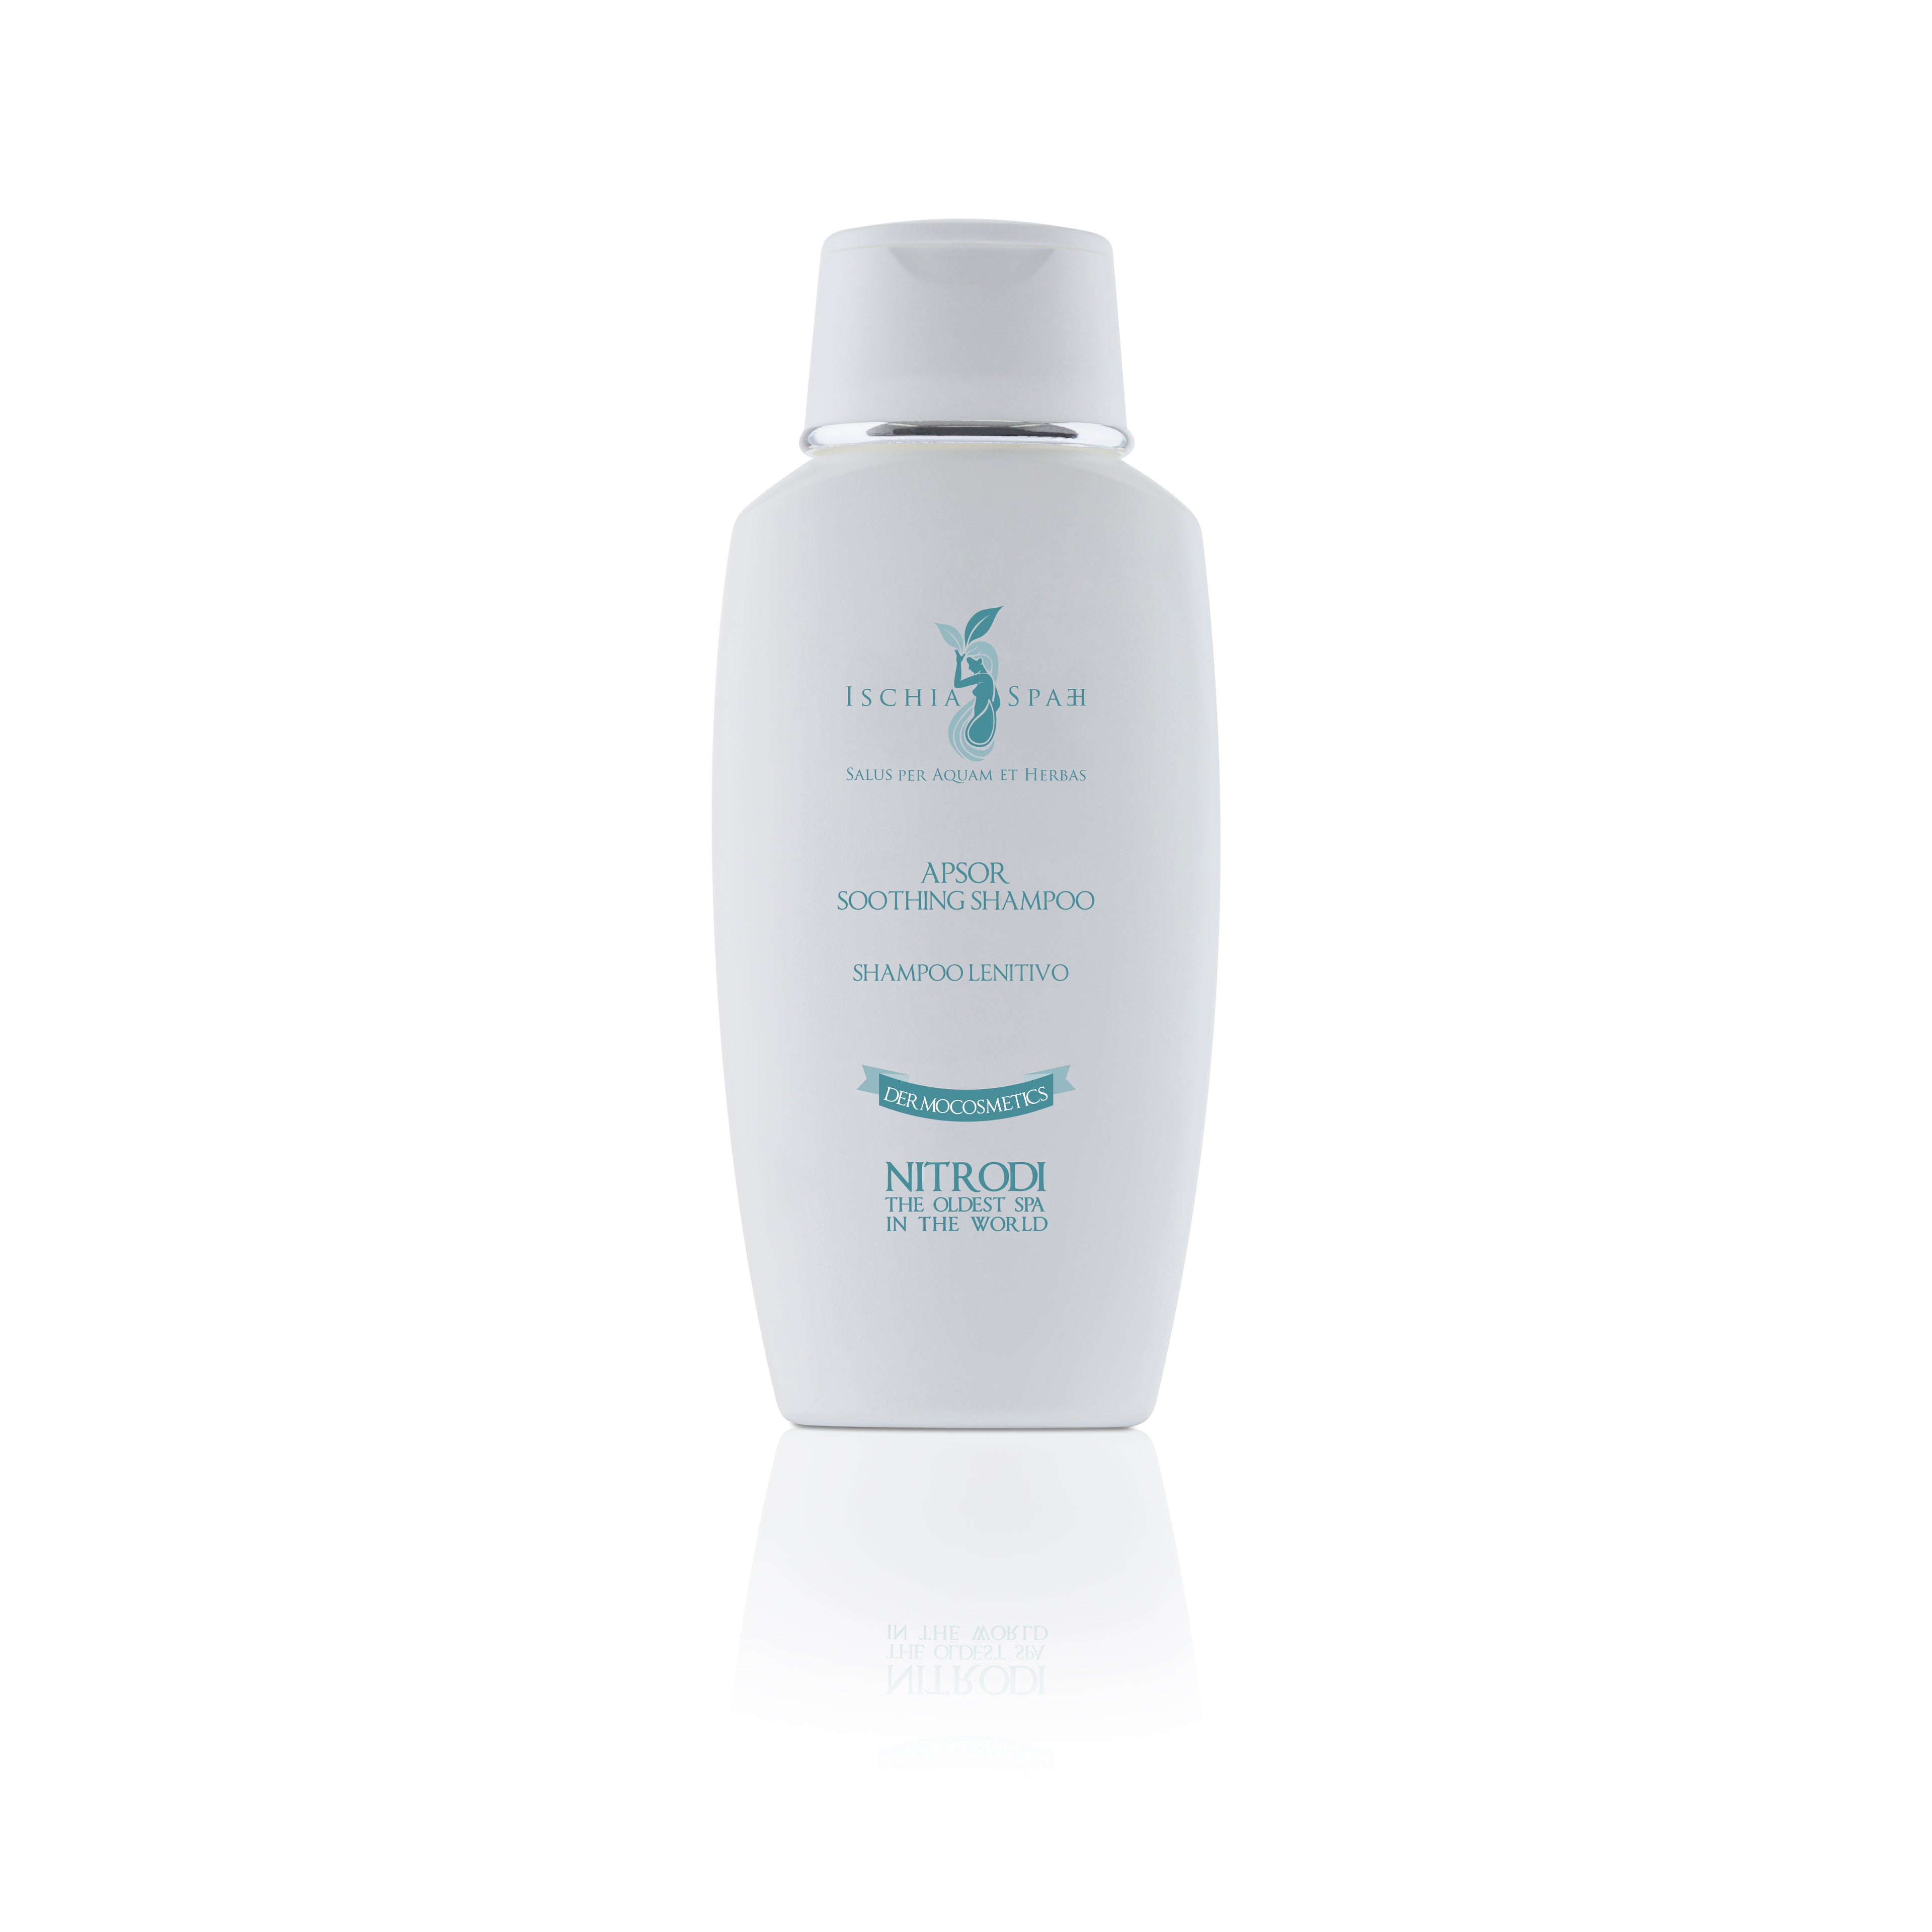 Shampoo lenitivo - Apsor | Ischia SPAEH